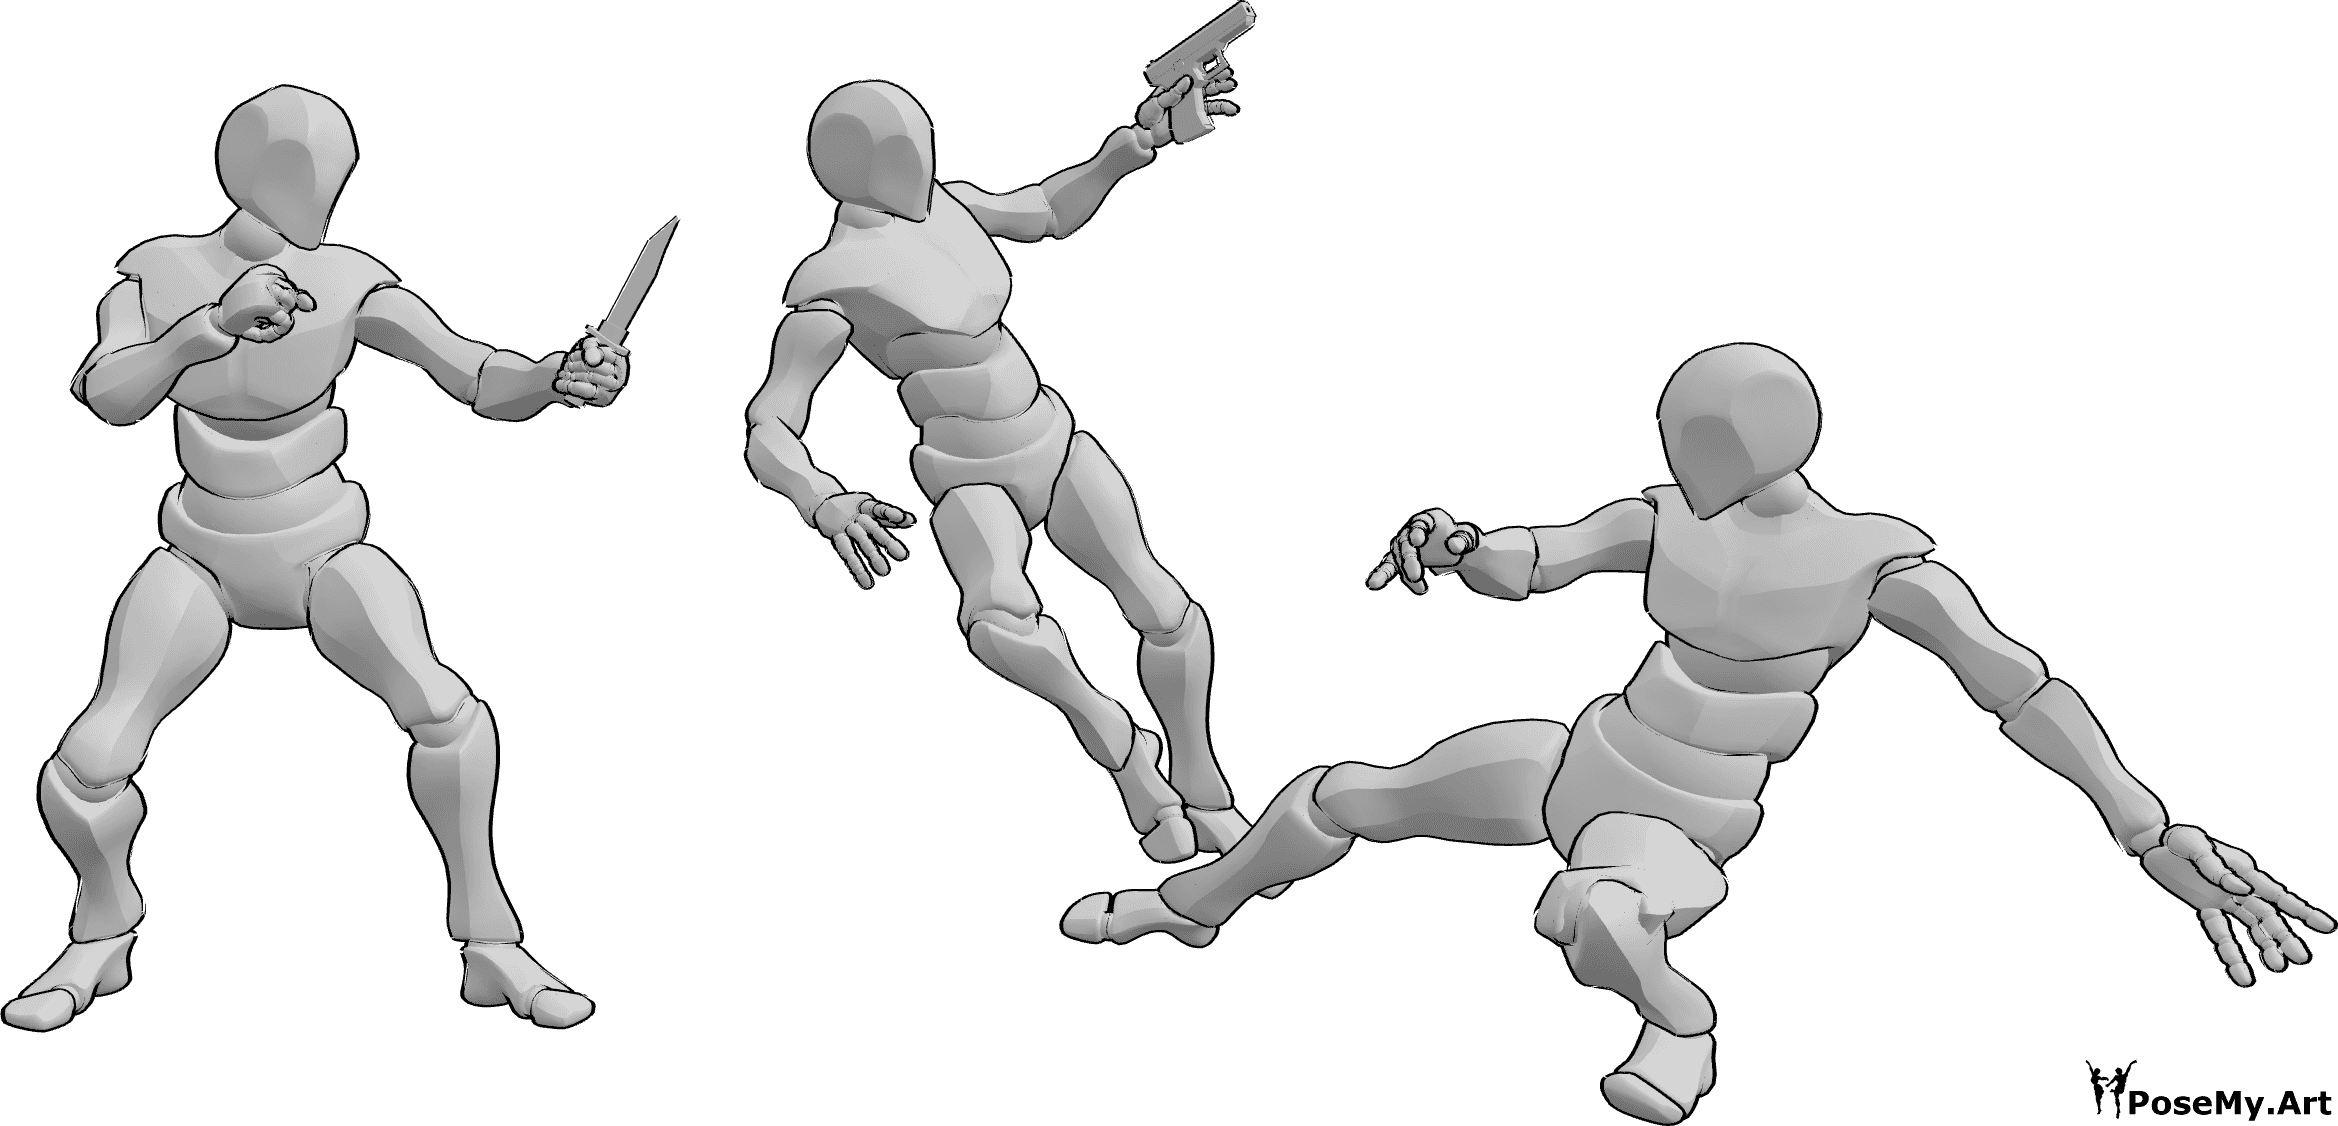 Référence des poses- Pose de combat avec arme à feu et poignard - Trois hommes se battent, tenant un pistolet et un poignard, l'un d'eux tombe d'un coup de pied.